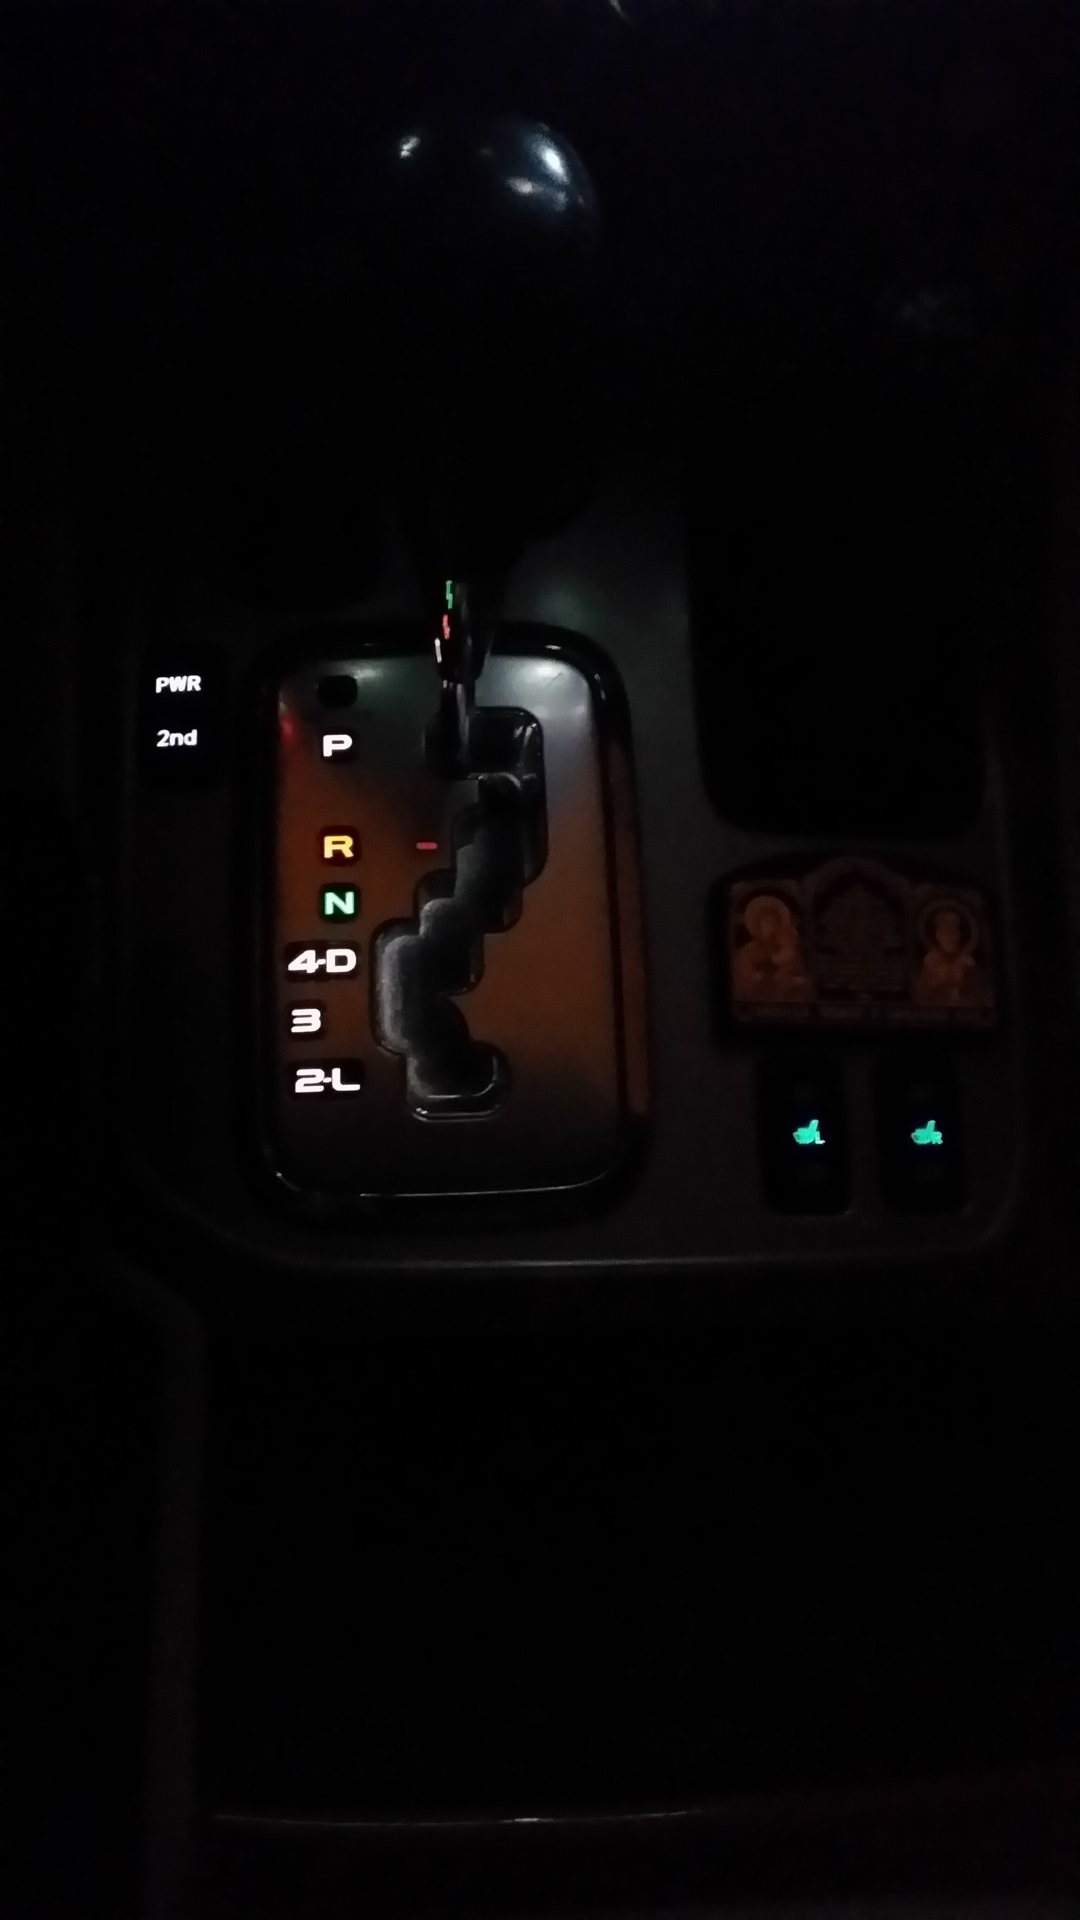 Подсветка кнопок тойота. Land Cruiser 120 подсветка кнопок. Подсветка АКПП Прадо 120. Лампочки для подсветки кнопок Toyota Land Cruiser 100. Подсветка кнопок Land Cruiser 100.